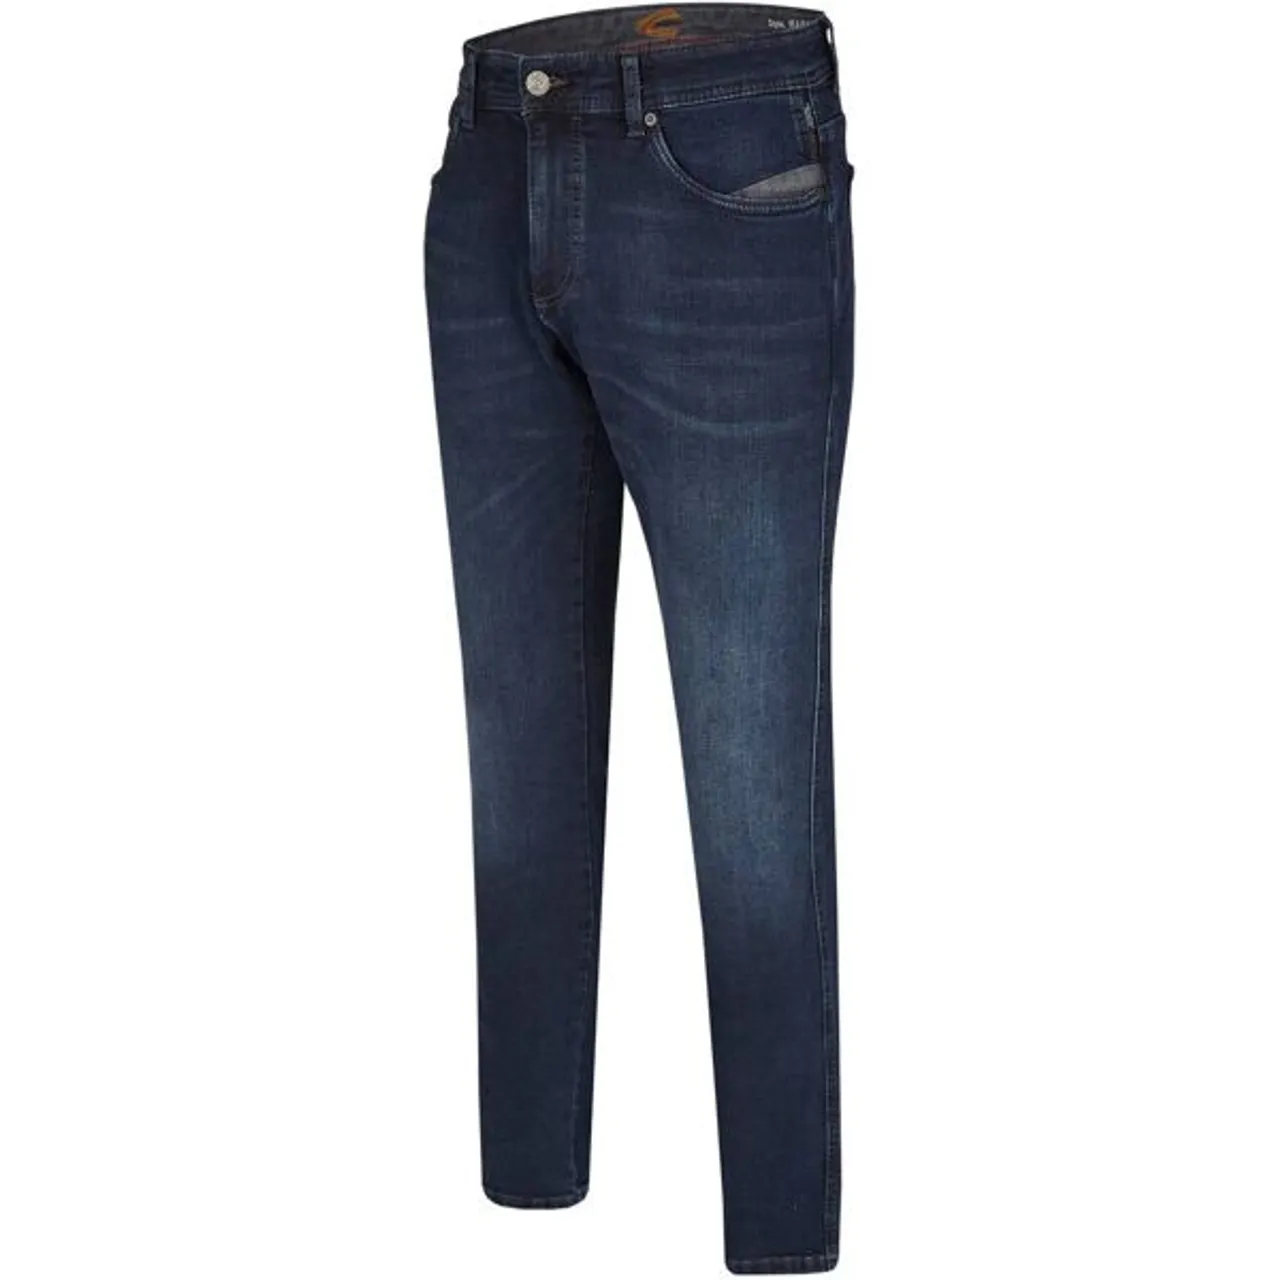 5-Pocket-Jeans CAMEL ACTIVE "MADISON" Gr. 42, Länge 34, blau (darkblue, used) Herren Jeans 5-Pocket-Jeans